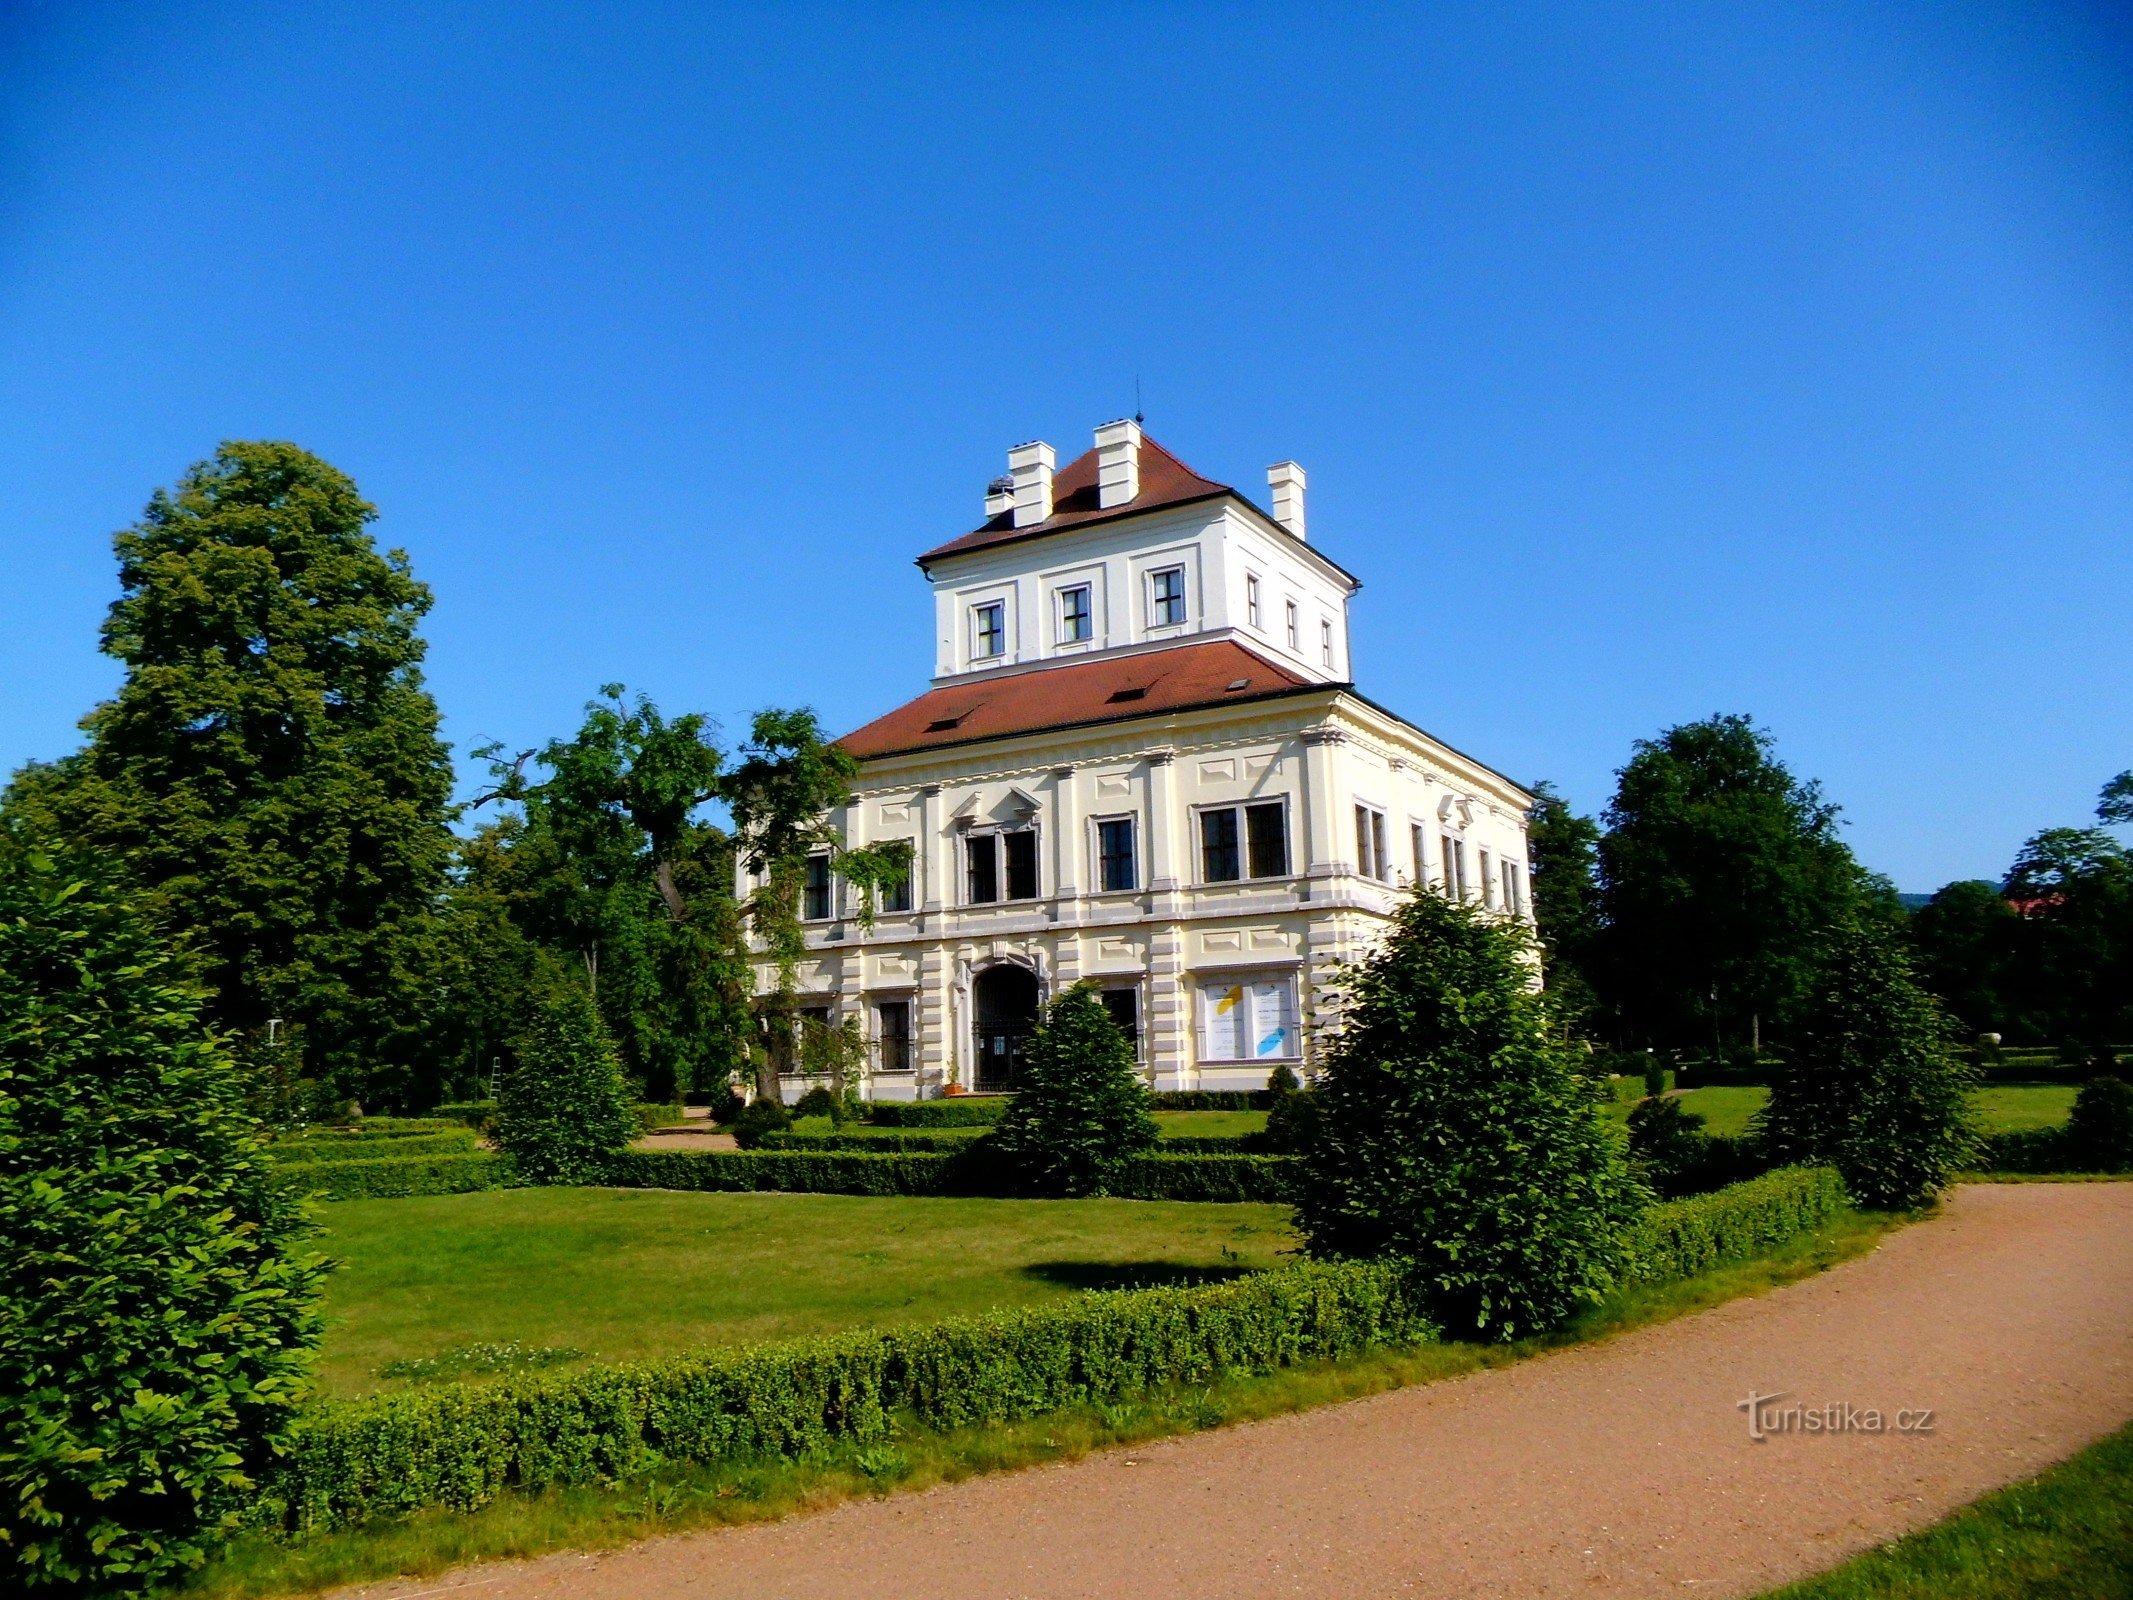 步行穿过 Ostrov nad Ohří 城堡公园